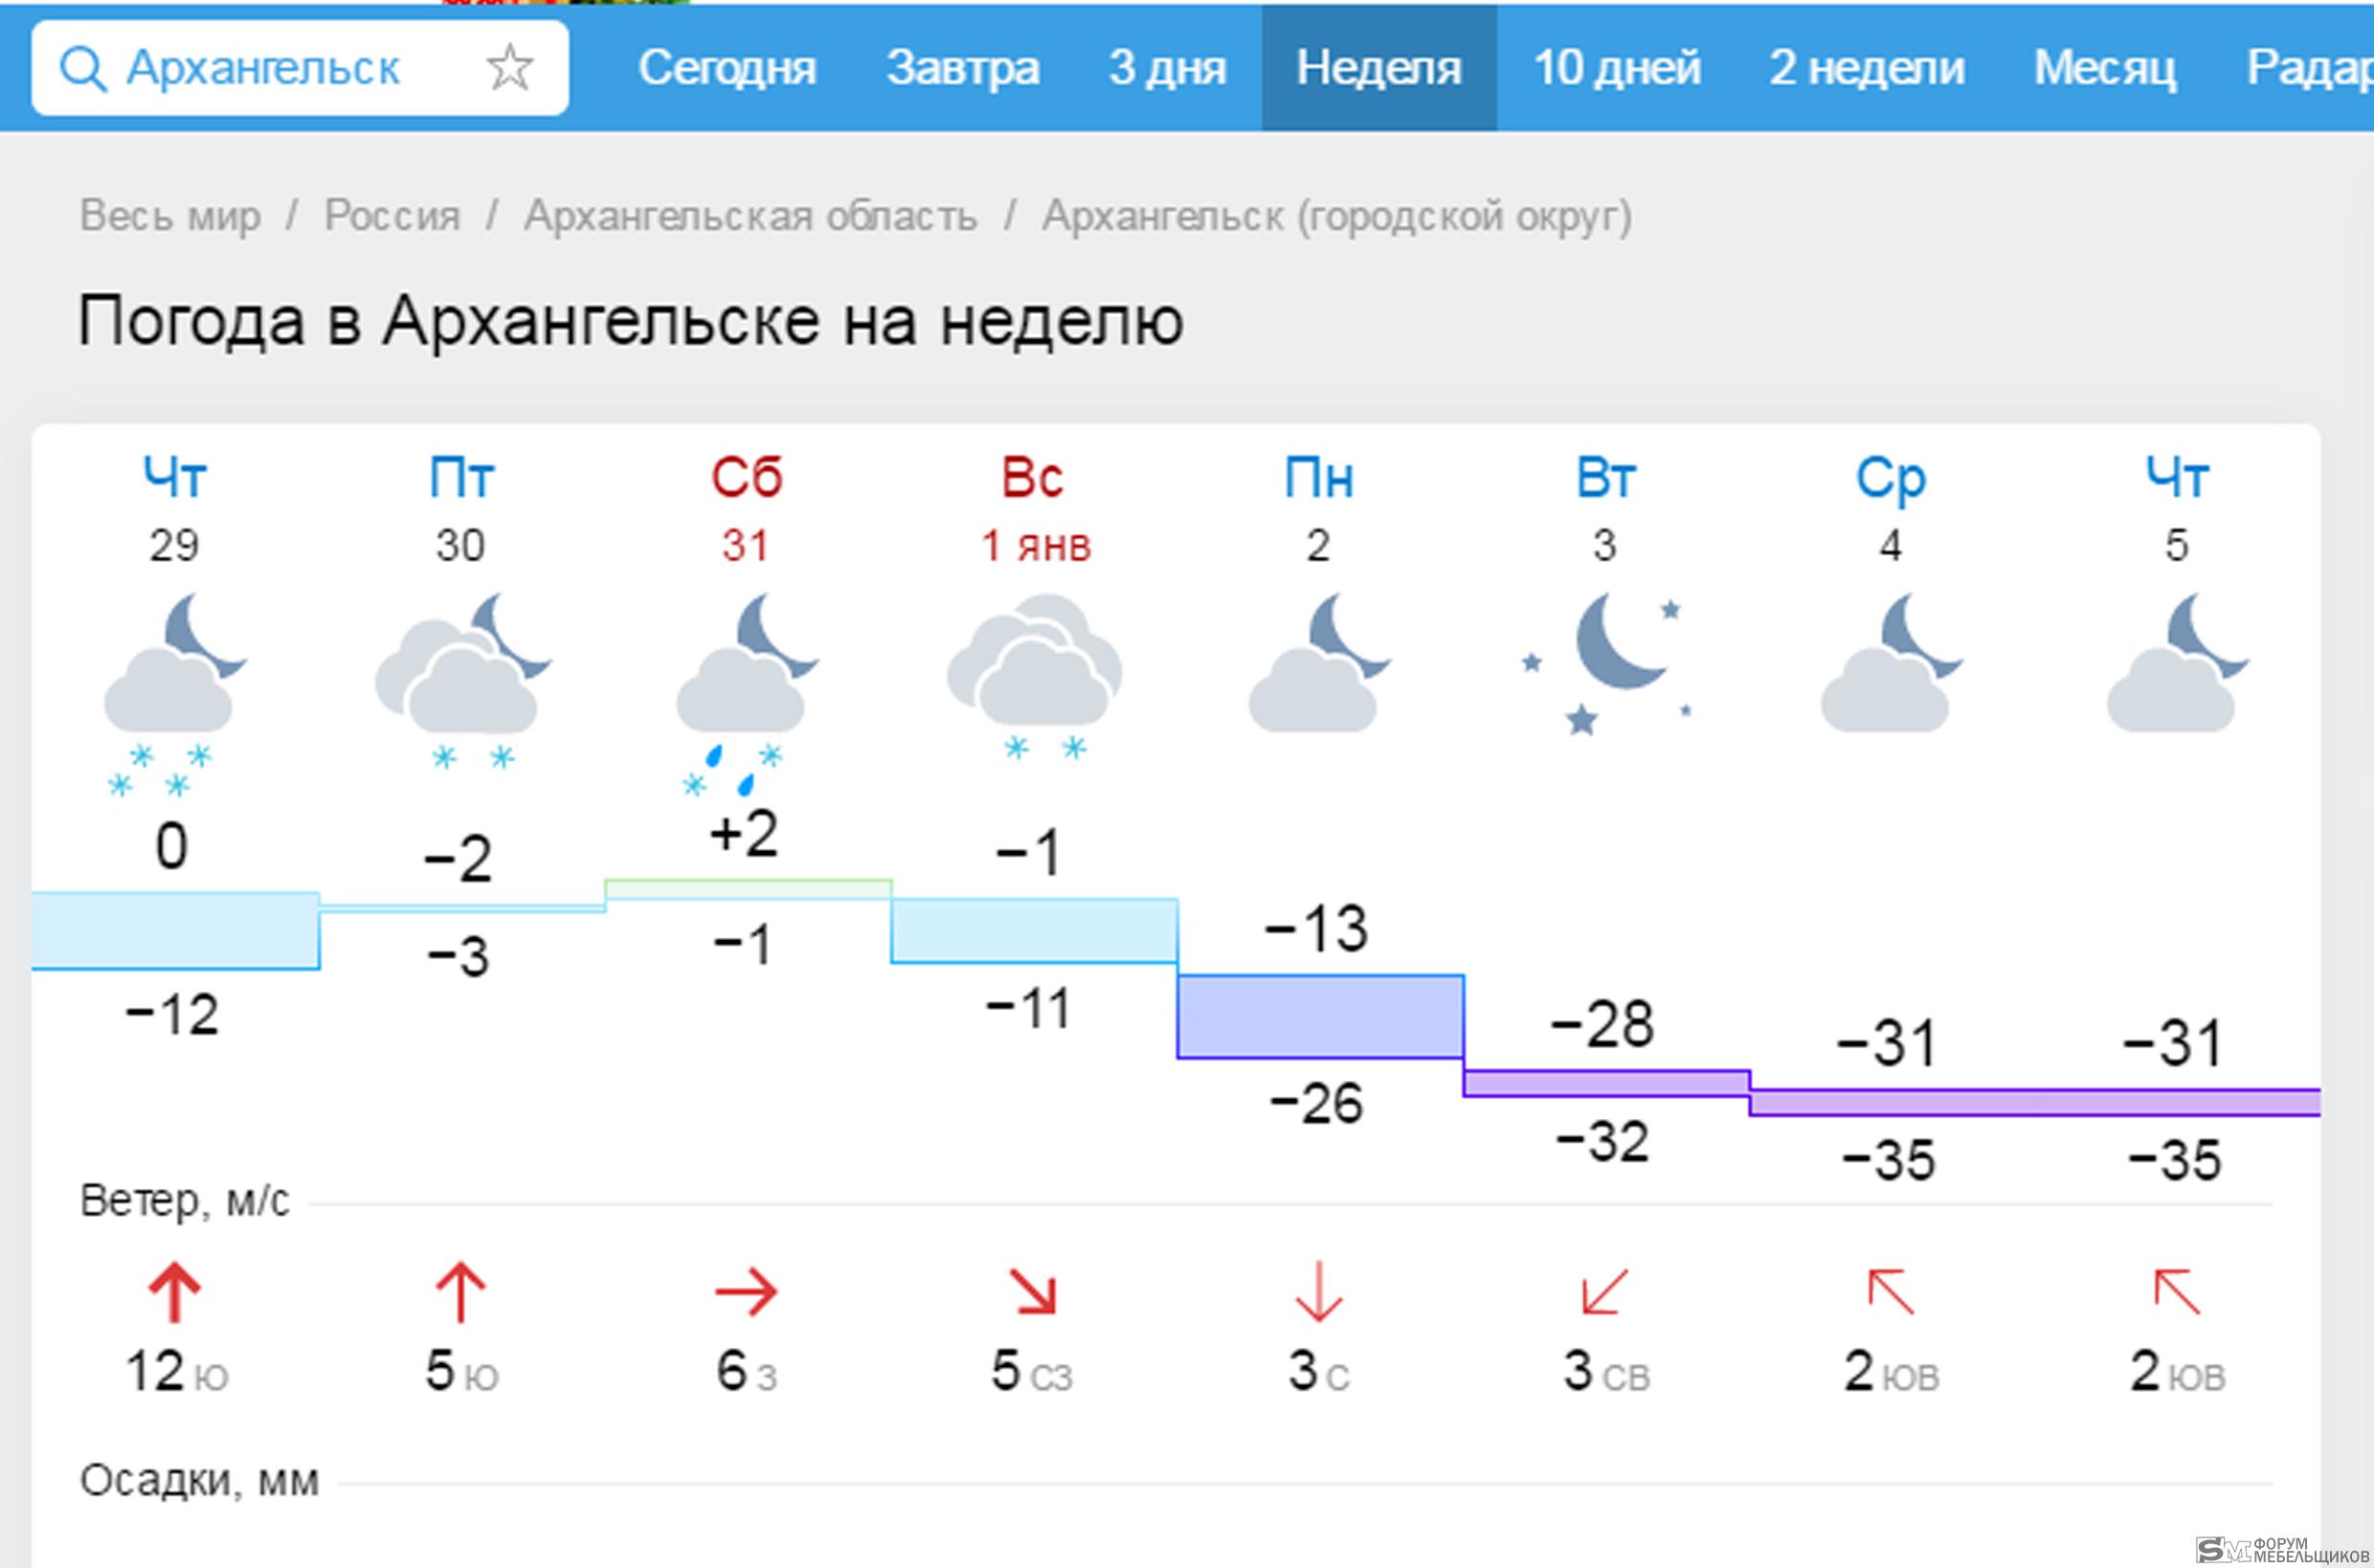 Йошкар ола погода на 10 дней гисметео. Погода в Архангельске на неделю. Погода на завтра в Архангельске. Погода в Архангельске на сегодня. Погода в Архангельске сейчас.